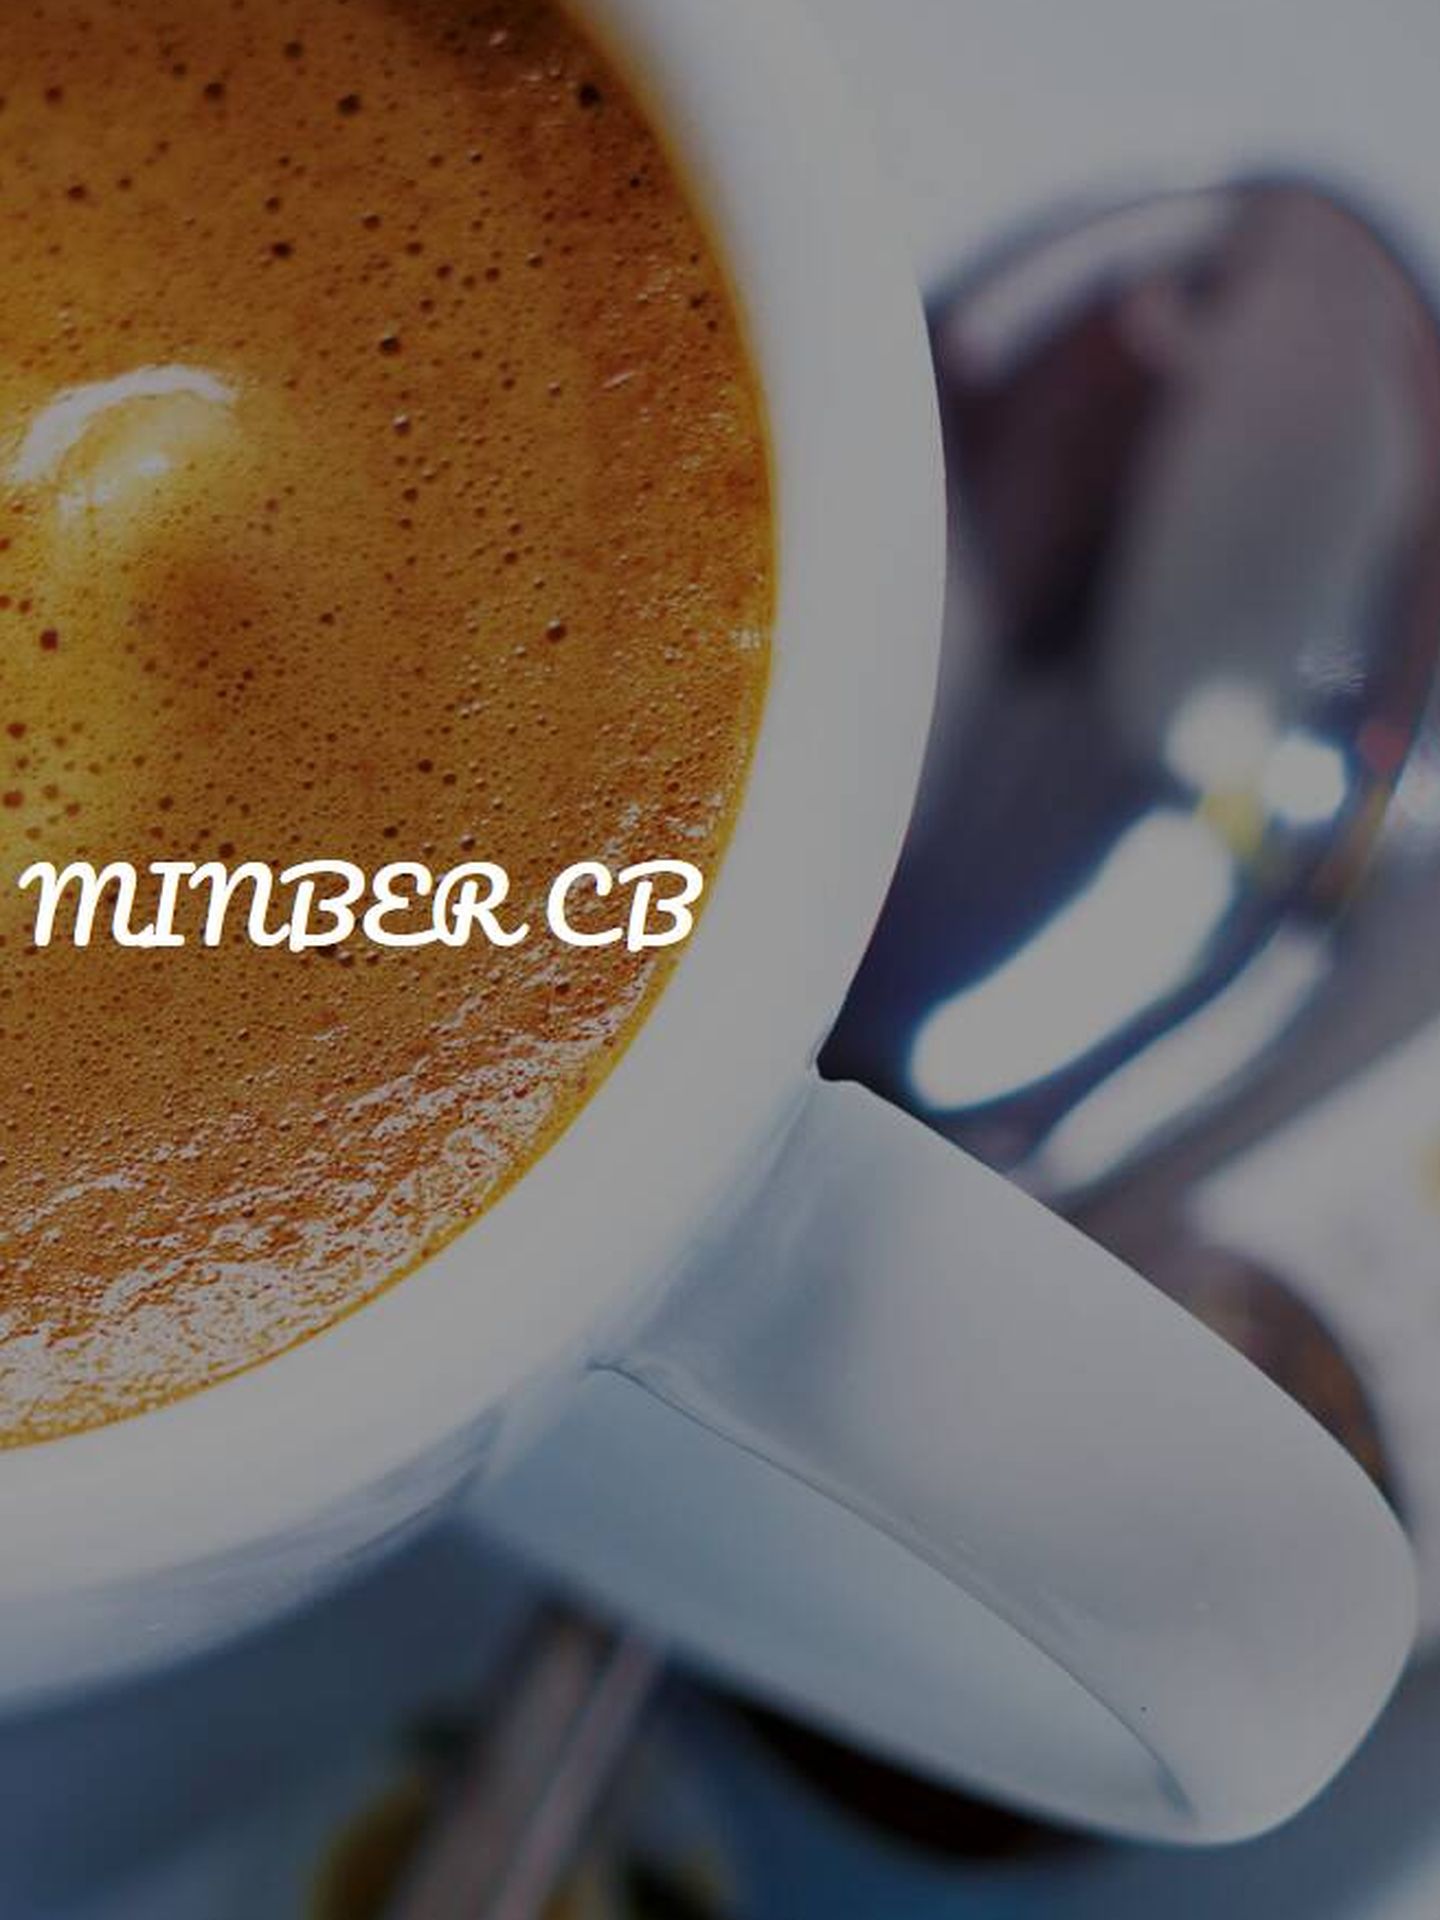 Café Minber Bar. (Cortesía)